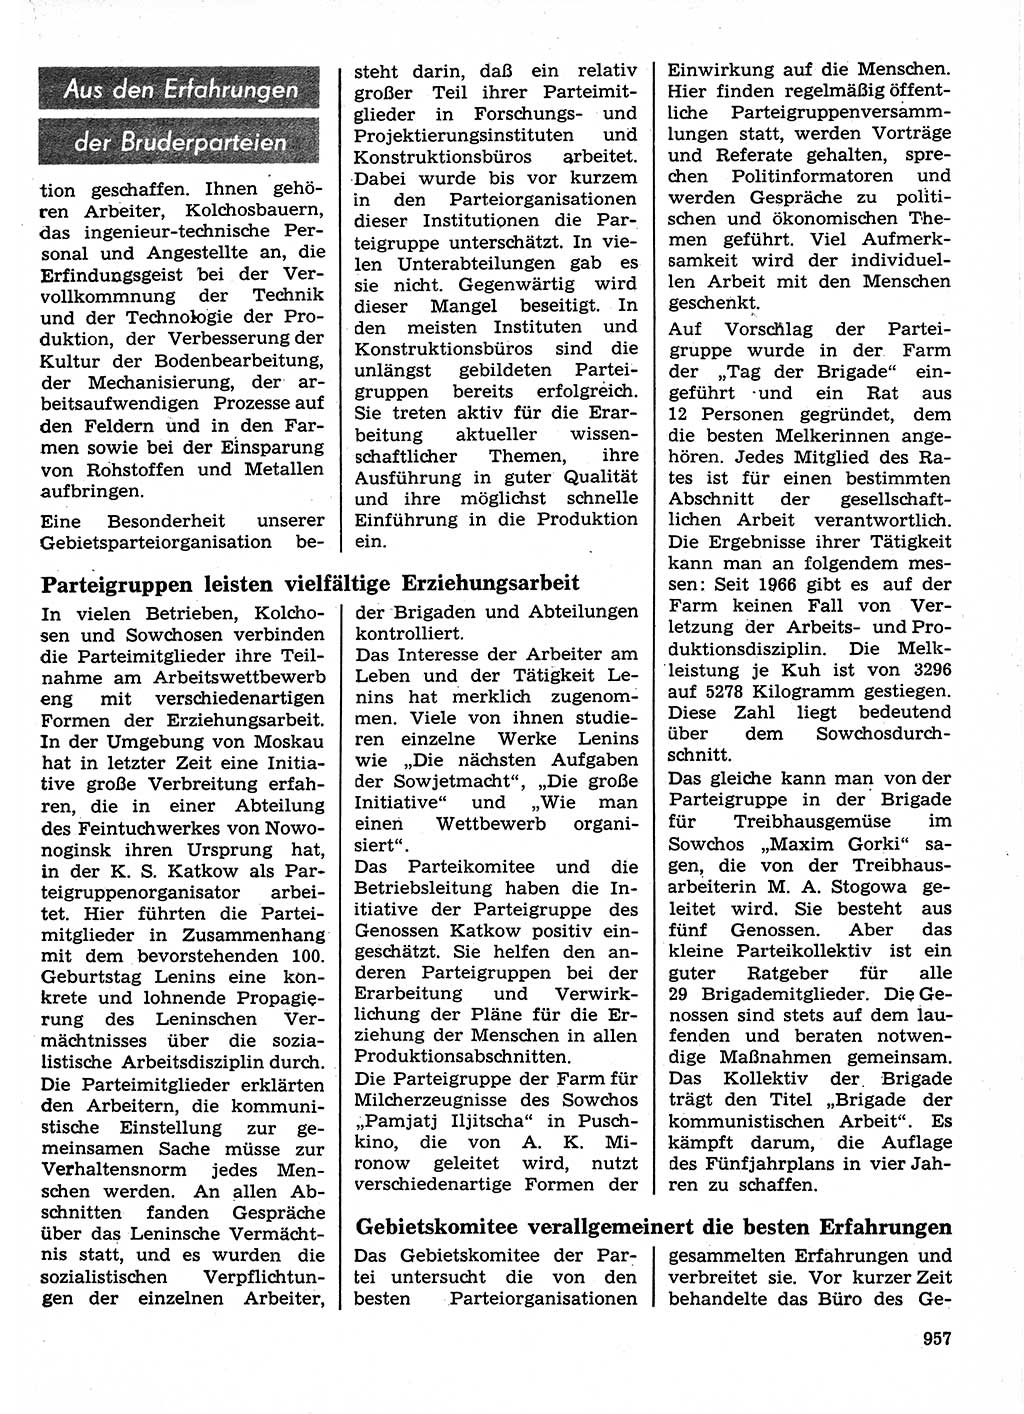 Neuer Weg (NW), Organ des Zentralkomitees (ZK) der SED (Sozialistische Einheitspartei Deutschlands) für Fragen des Parteilebens, 24. Jahrgang [Deutsche Demokratische Republik (DDR)] 1969, Seite 957 (NW ZK SED DDR 1969, S. 957)